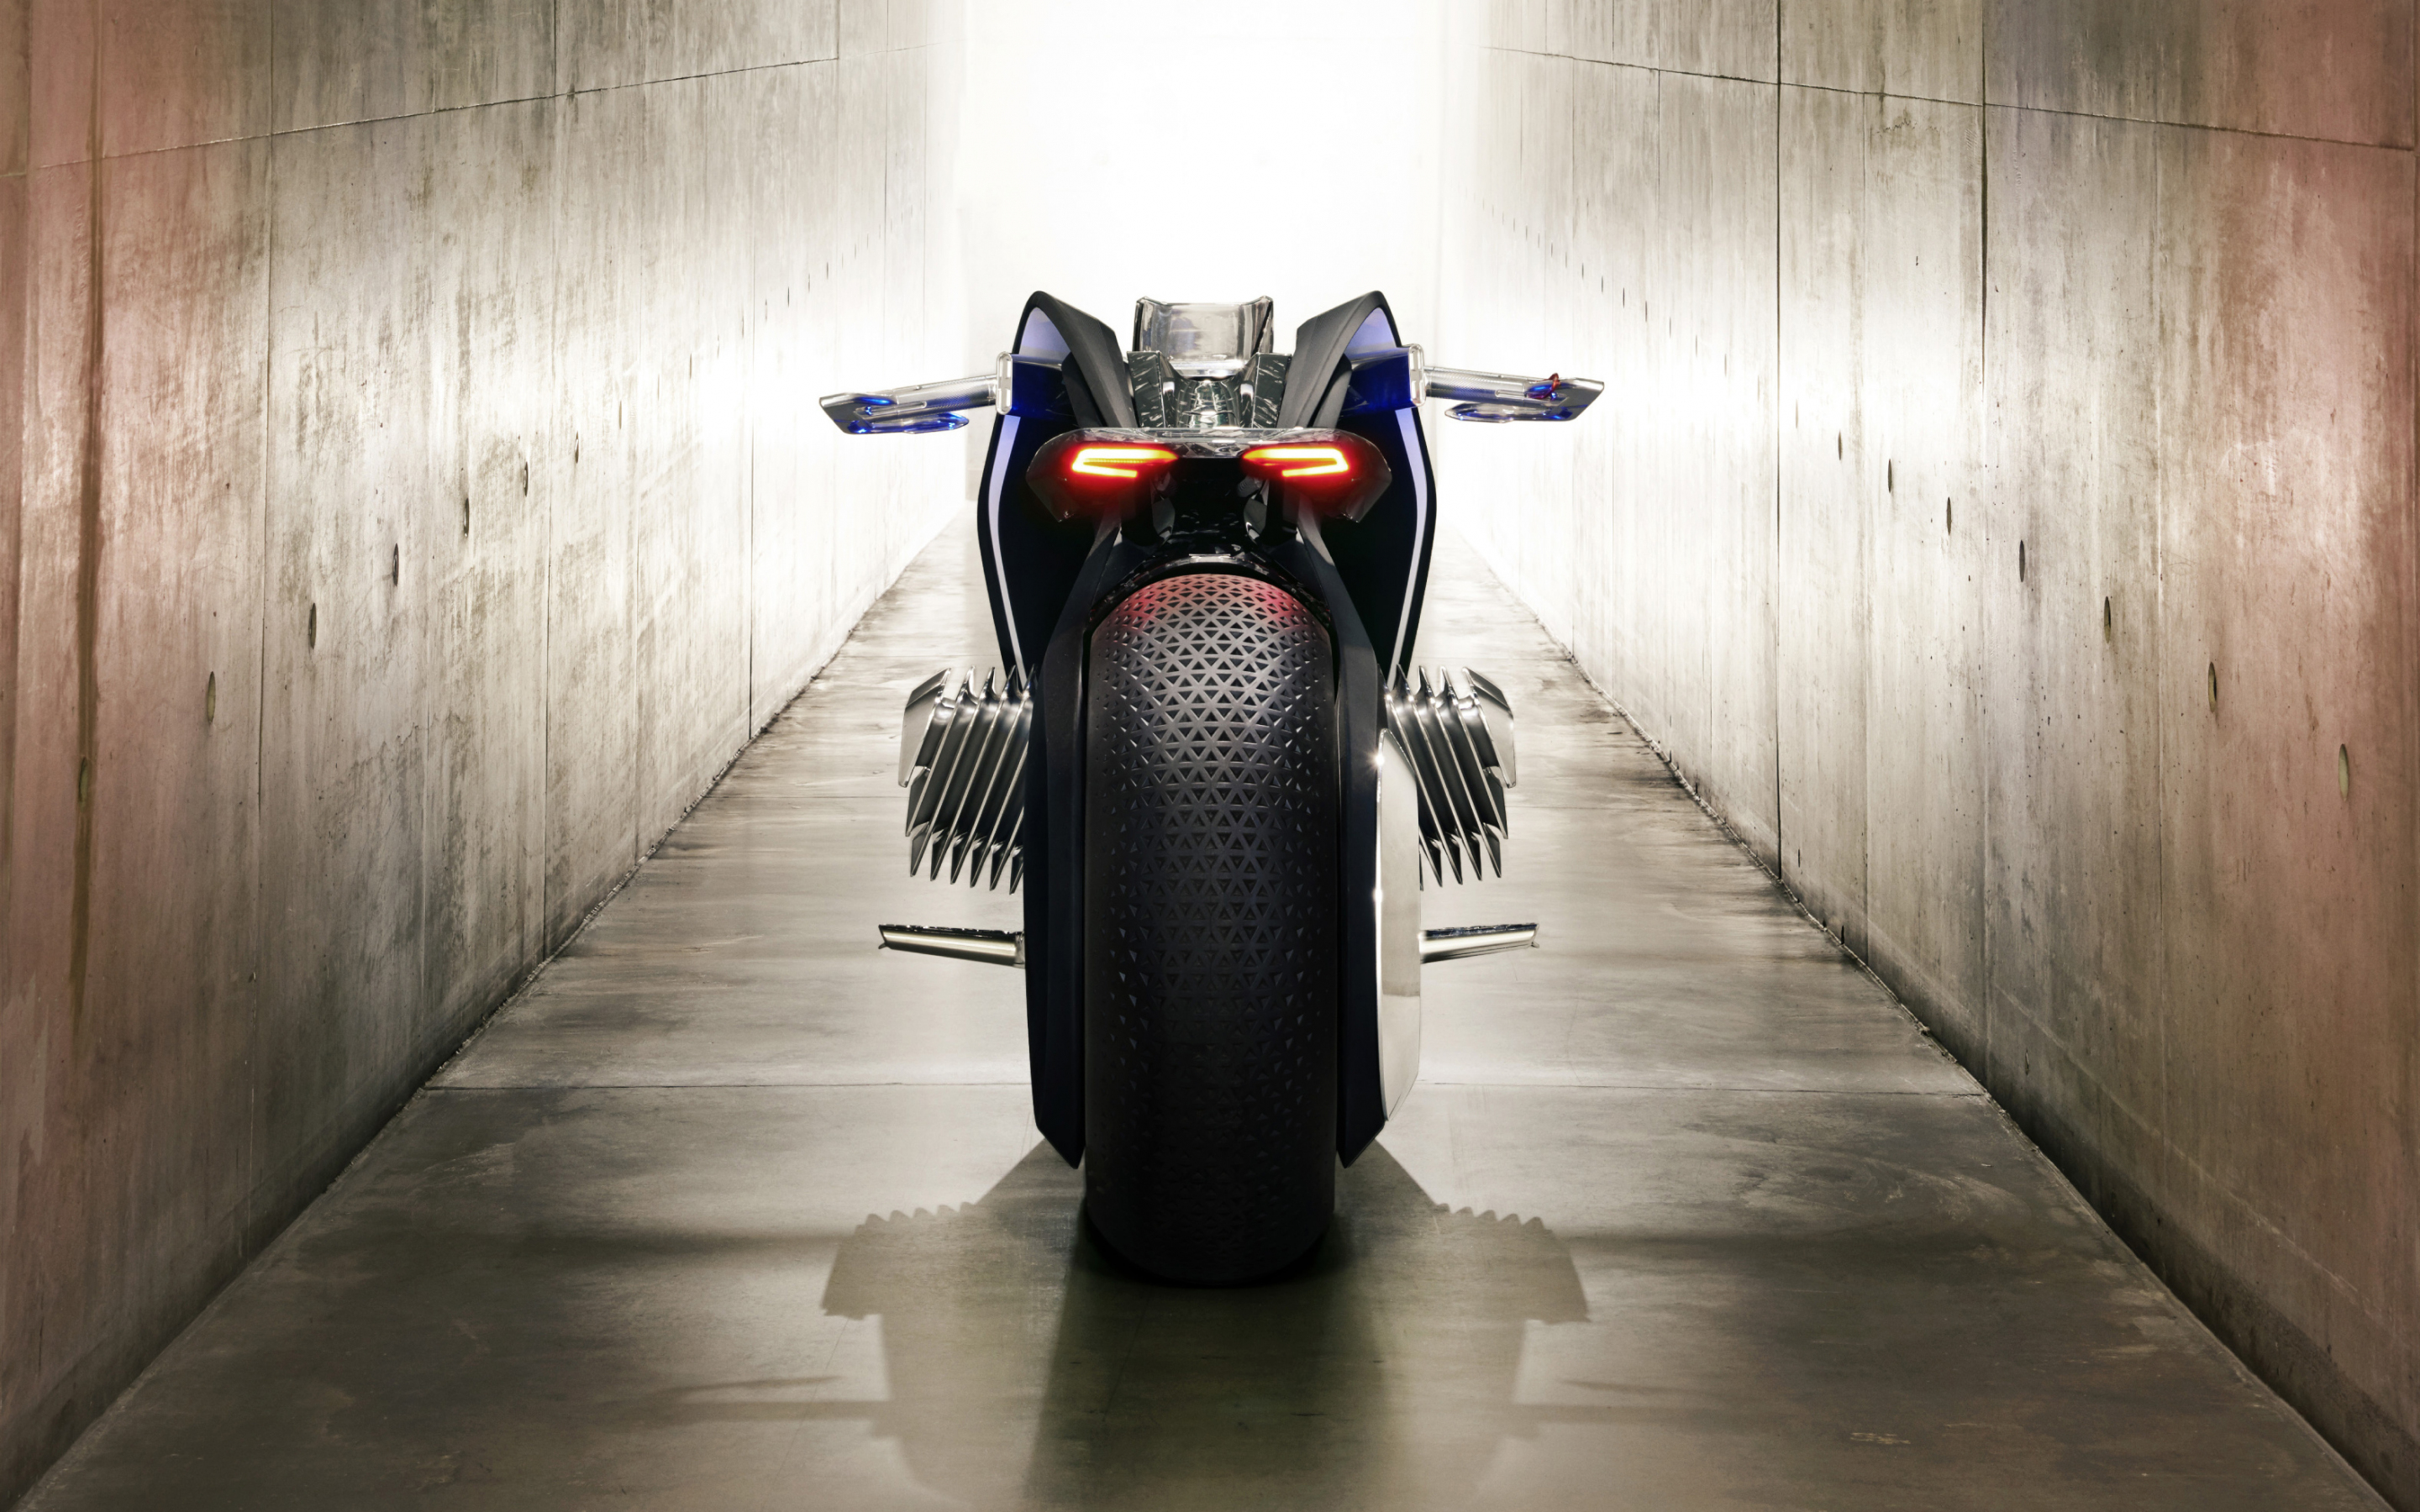 BMW vision next 100, concept bike, rear, 2880x1800 wallpaper